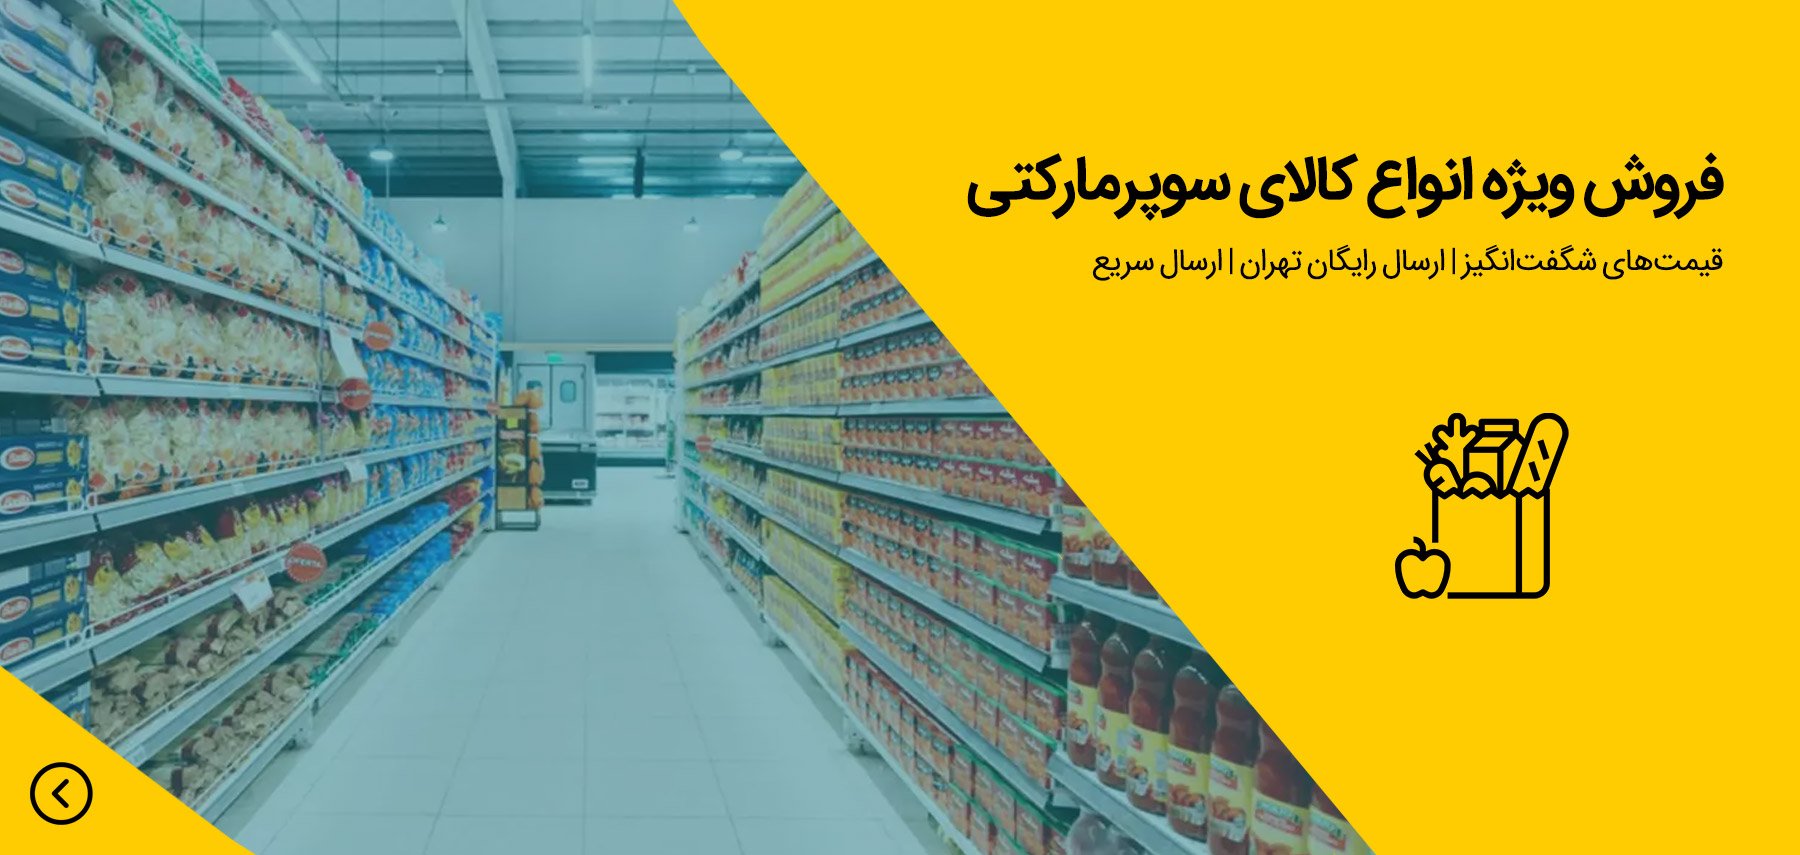 فروش ویژه انواع کالای مصرفی - سوپر مارکت اینترنتی با ارسال رایگان